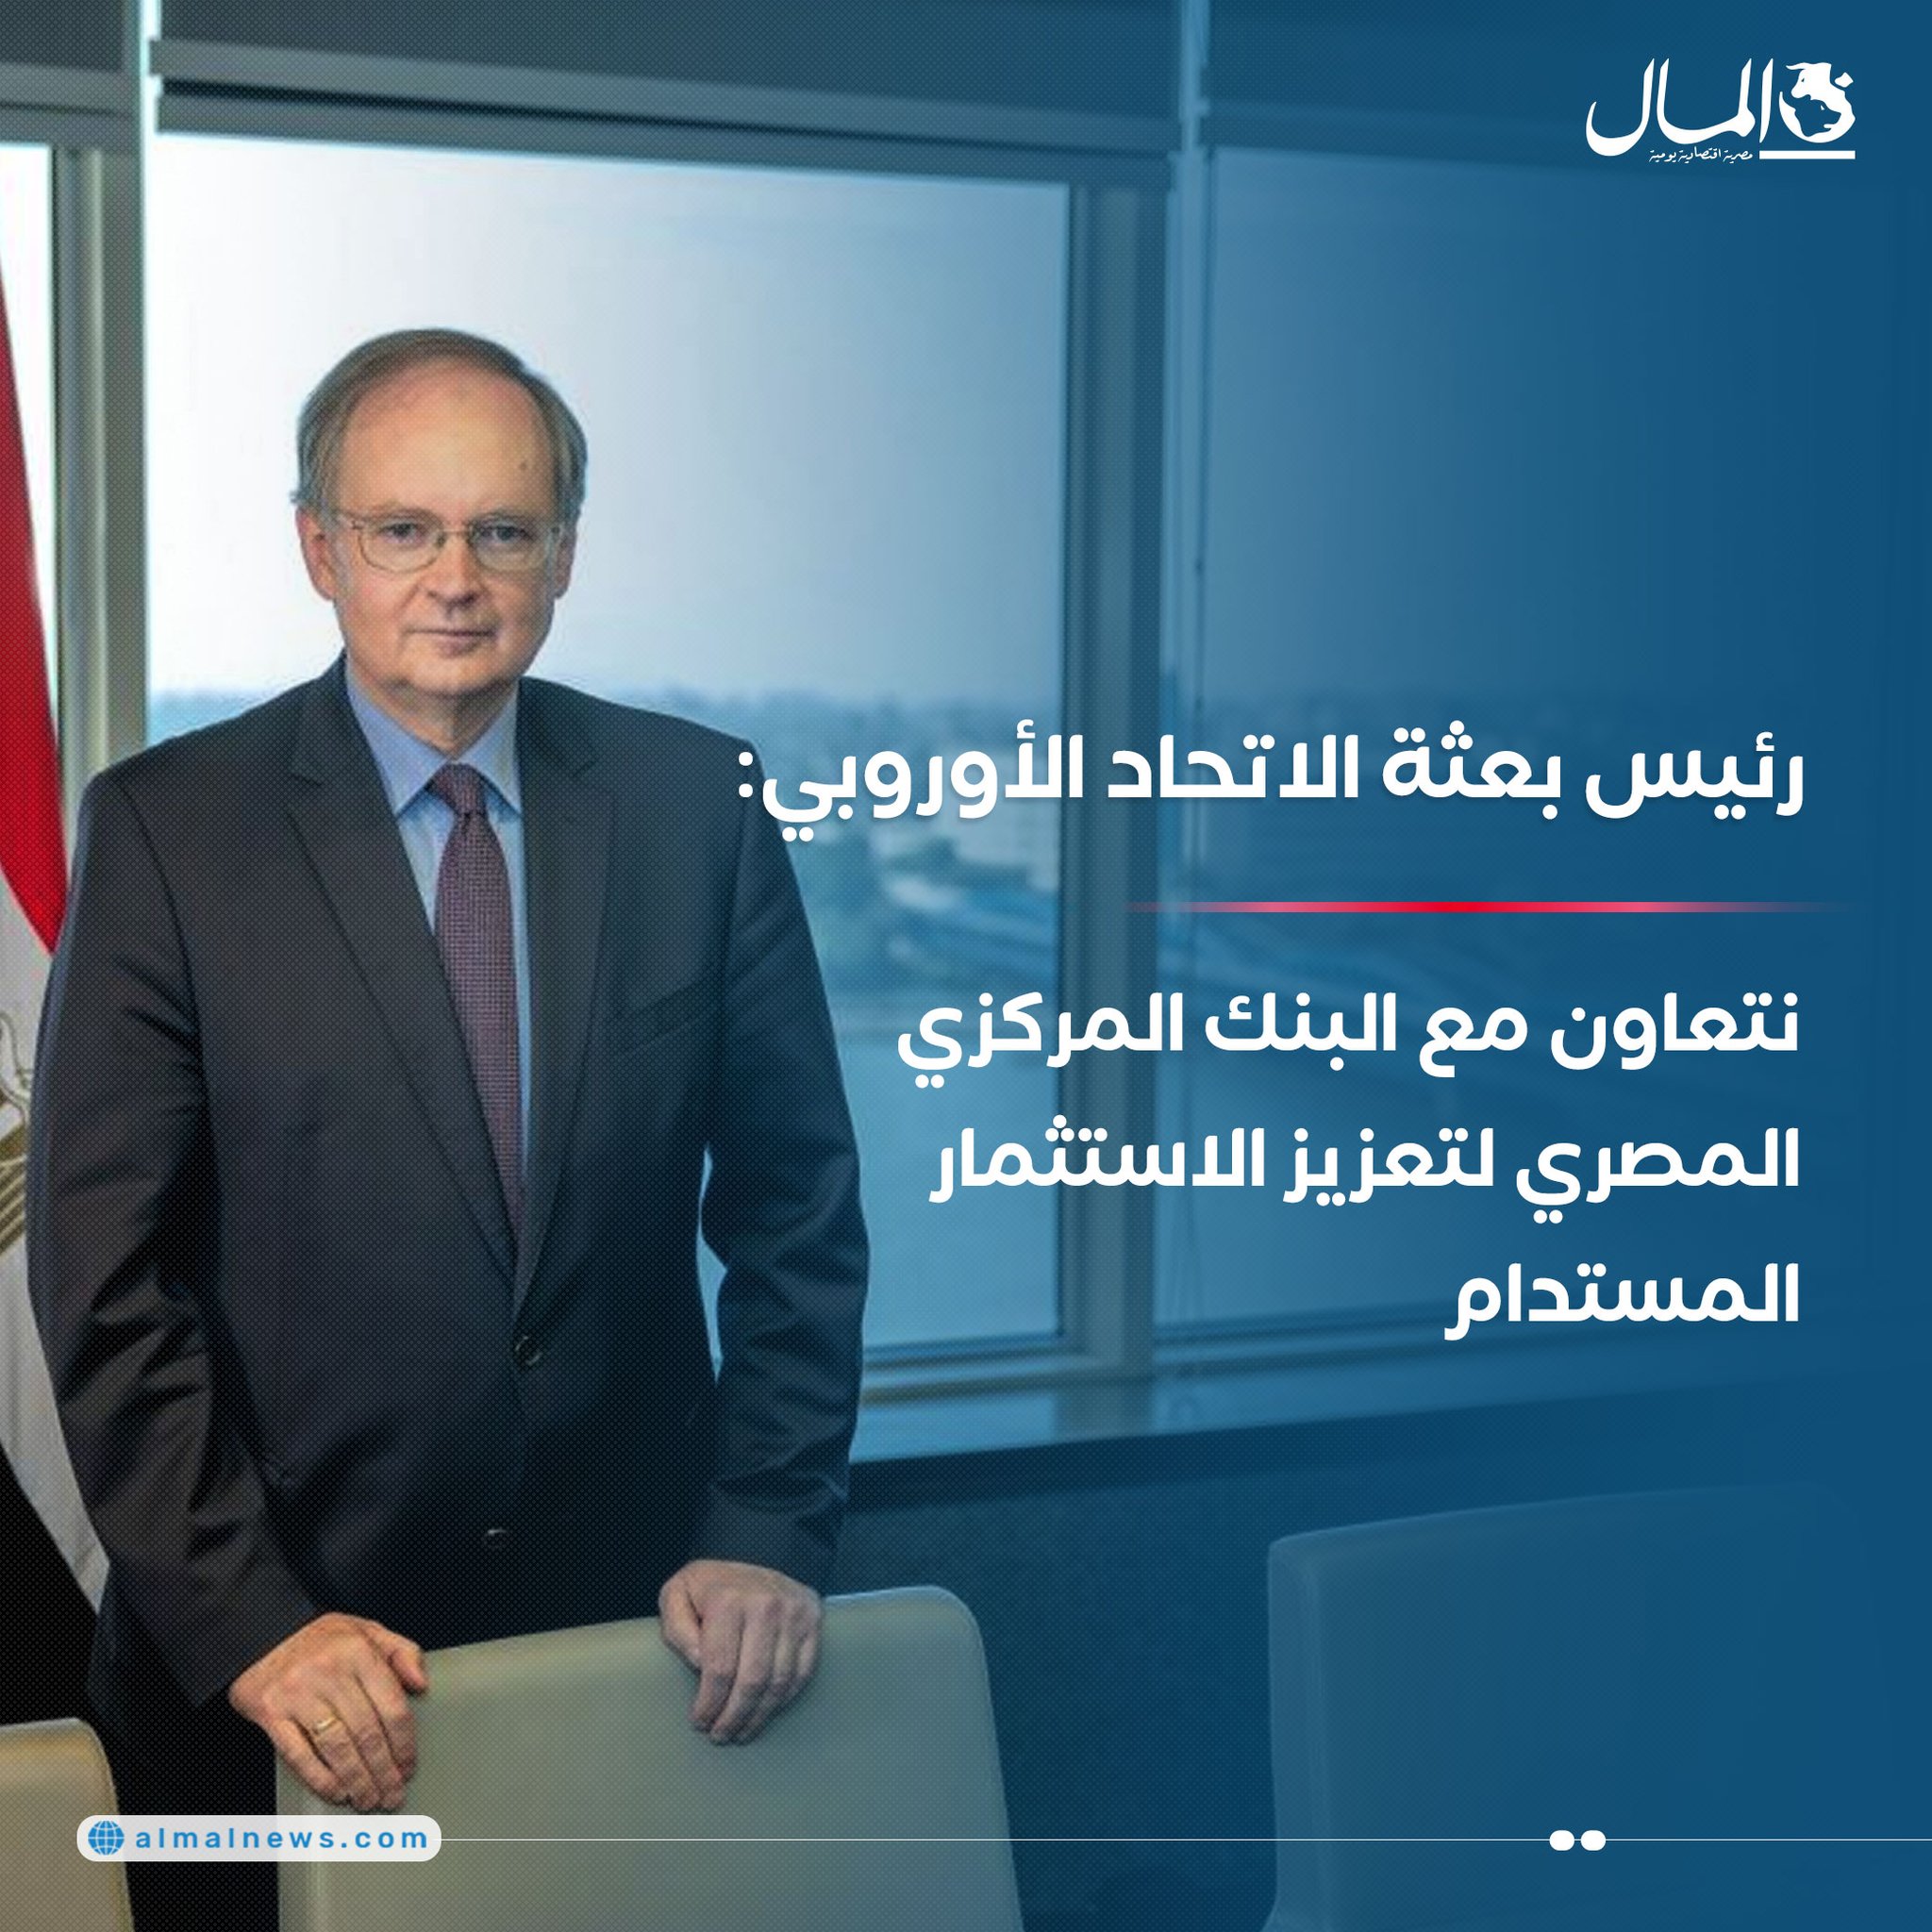 رئيس بعثة الاتحاد الأوروبي: نتعاون مع البنك المركزي المصري لتعزيز الاستثمار المستدام. للتفاصيل 